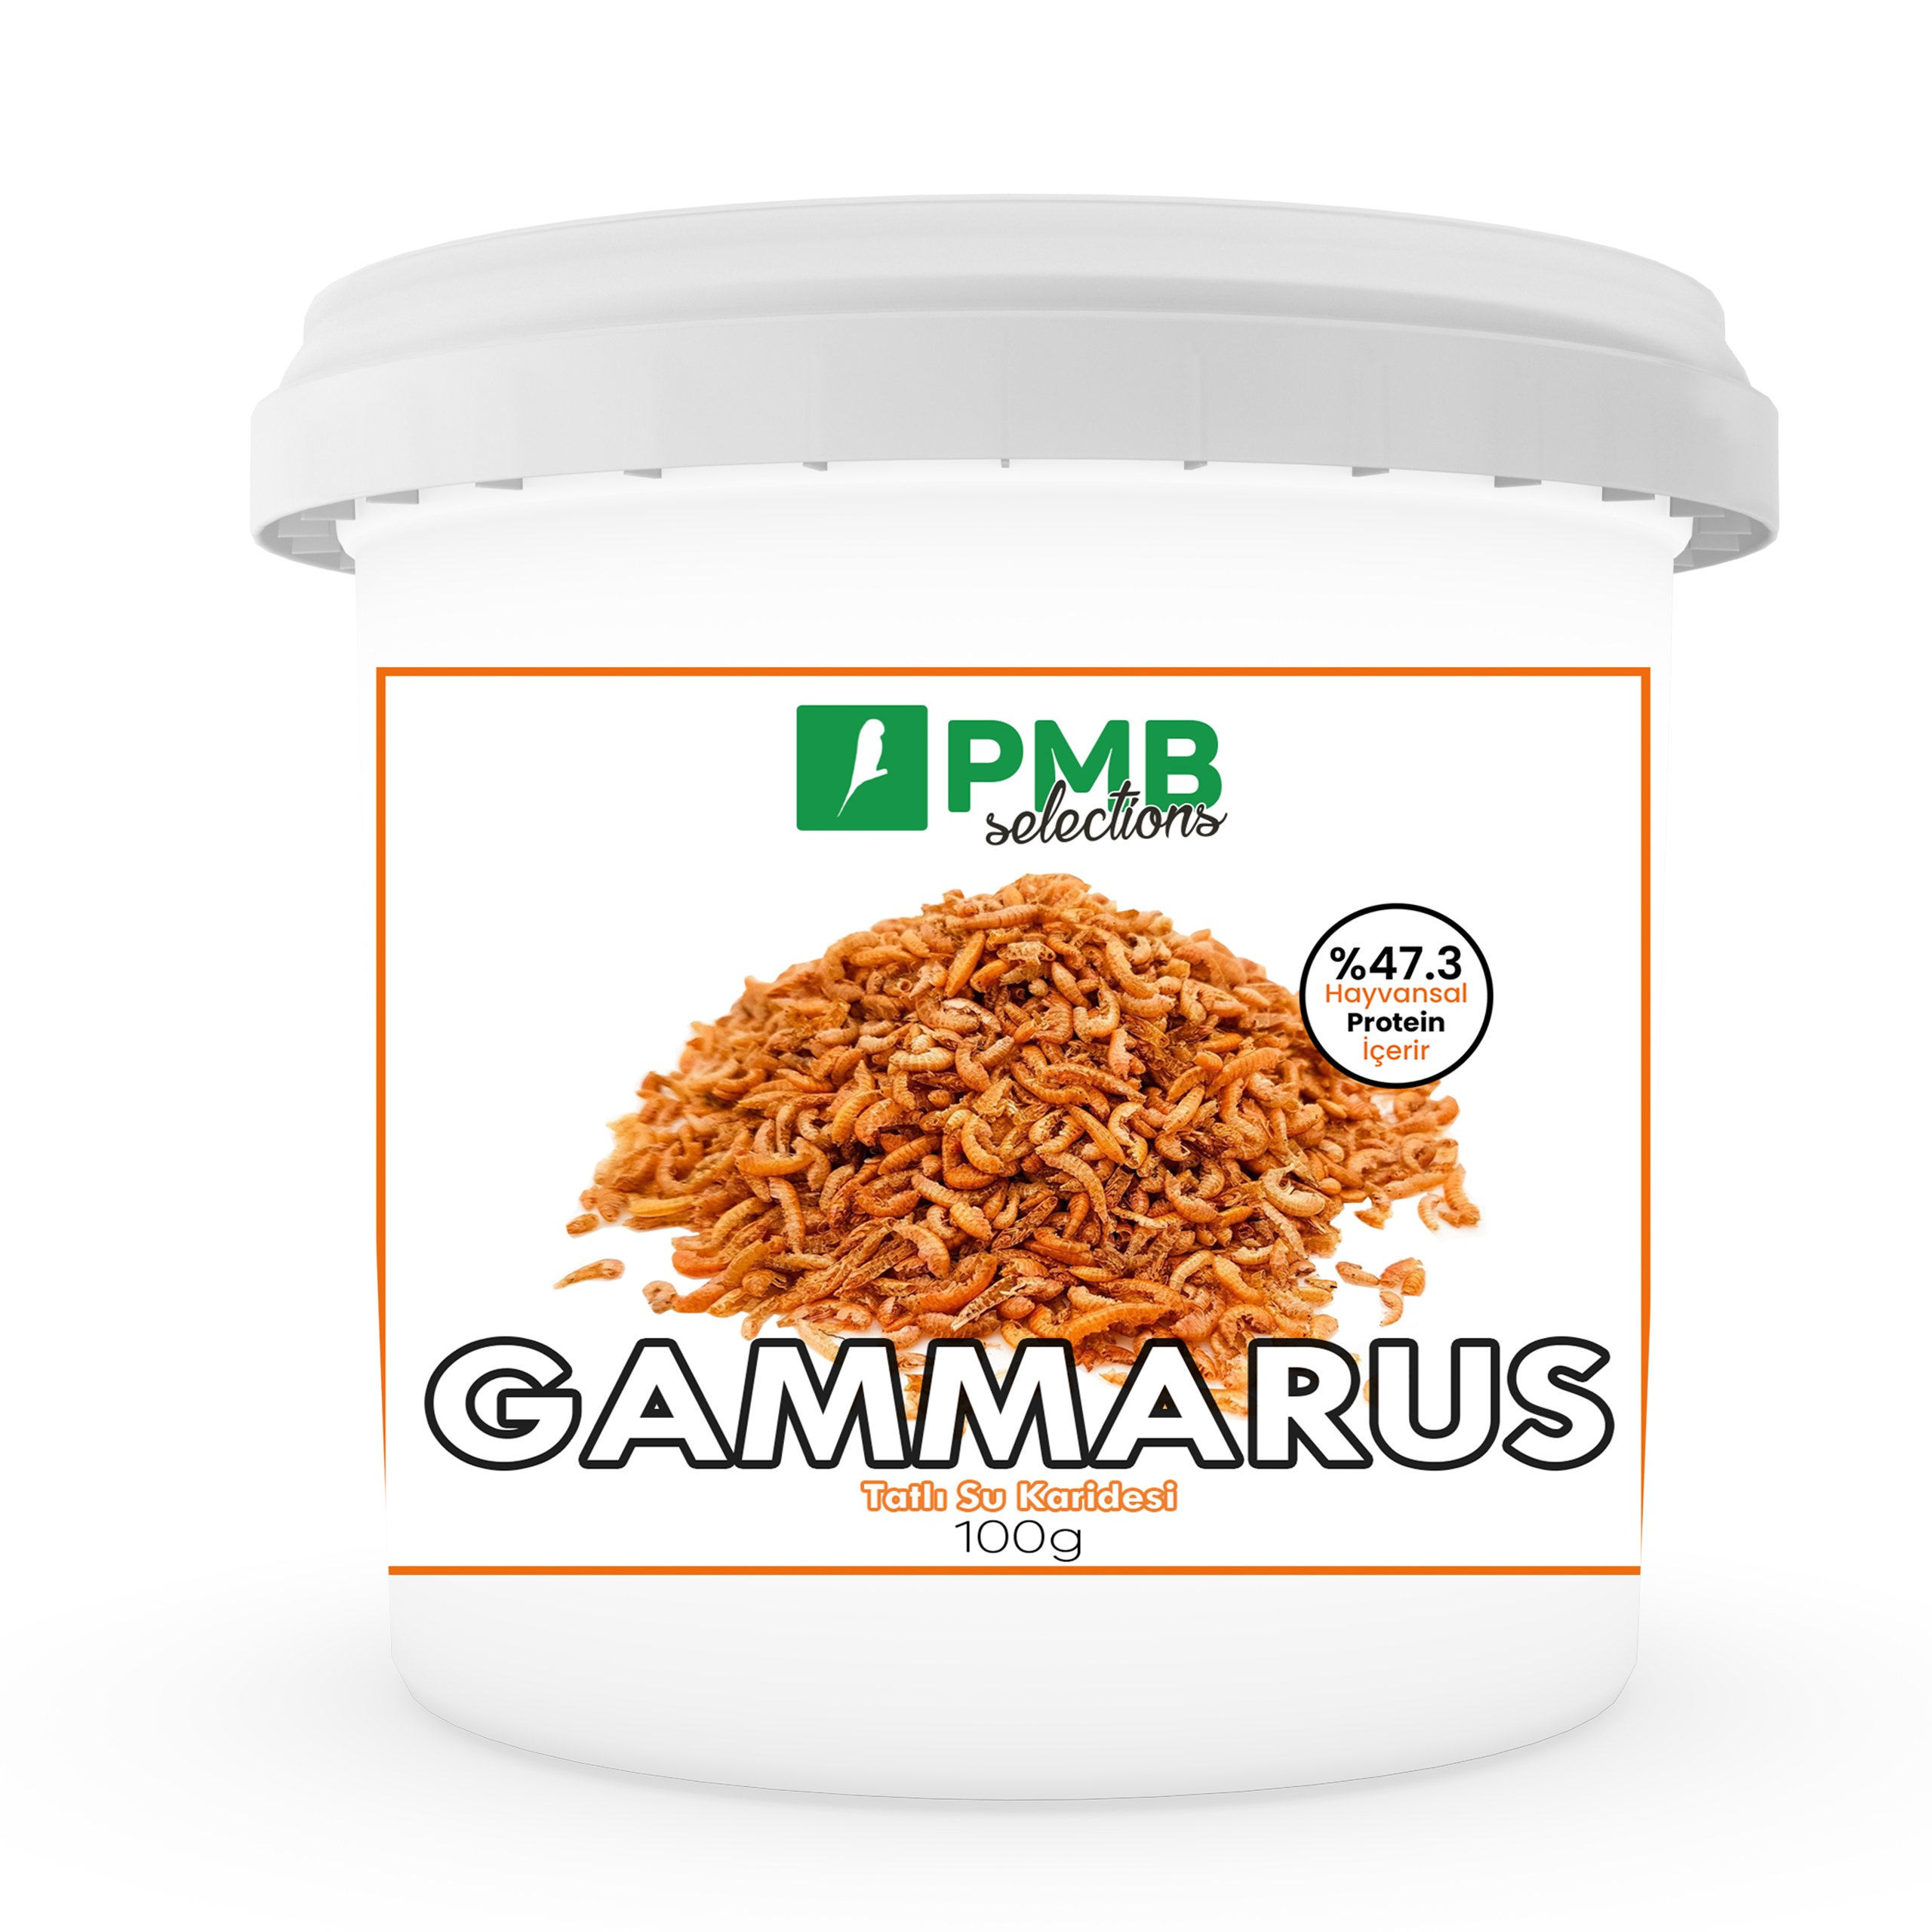 PMB Selections Gammarus Tatlı Su Karidesi Doğal Hayvansal Protein 100 g